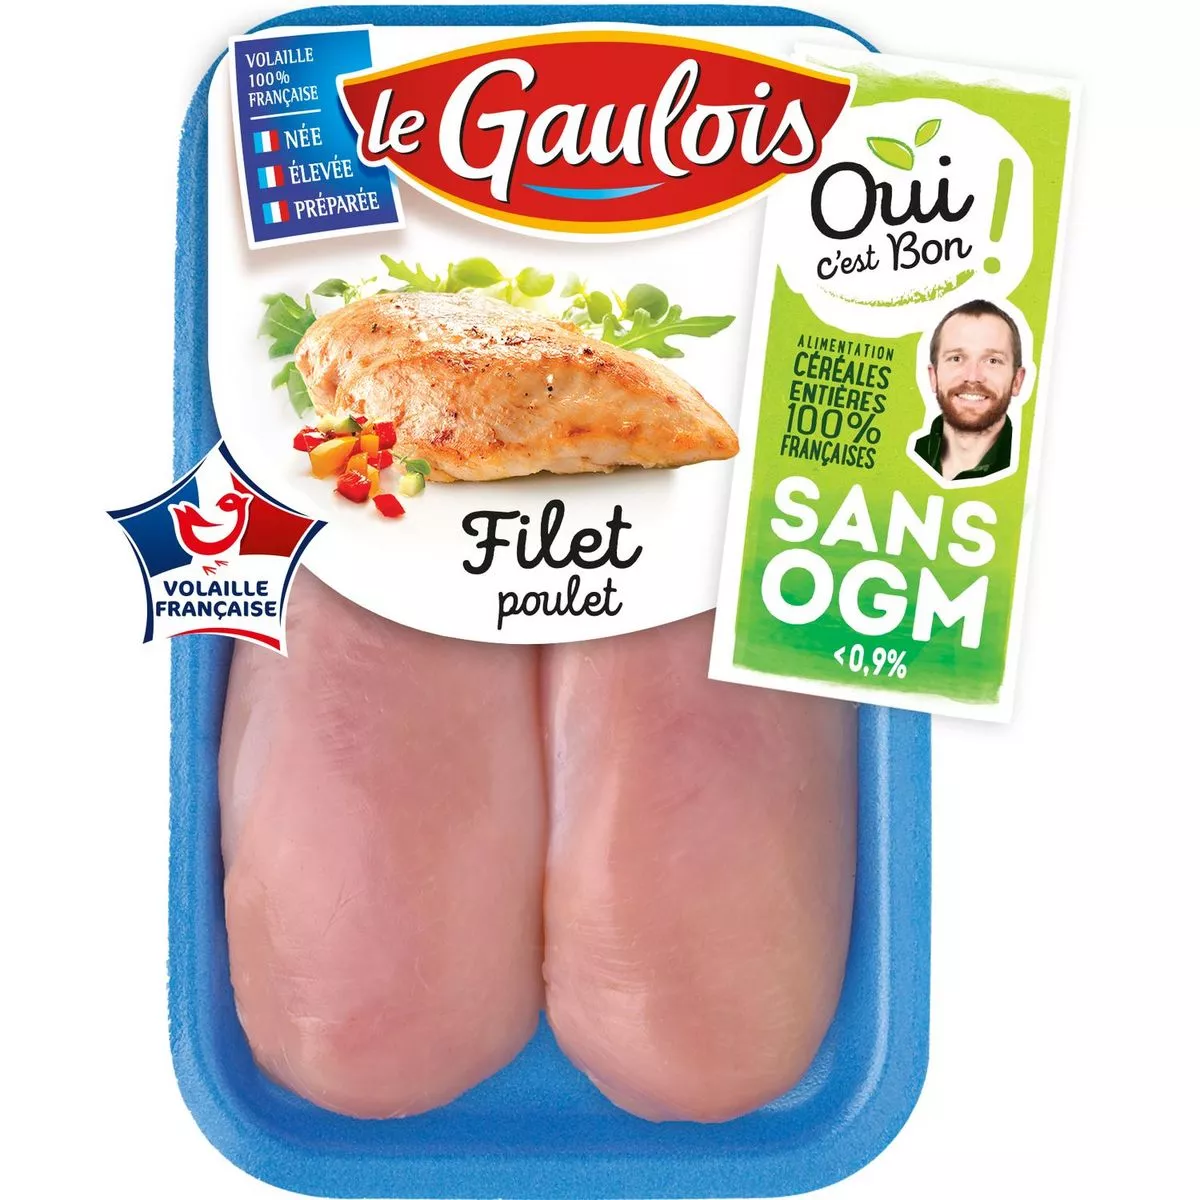 Le Gaulois 2 piece white chicken fillets 300g